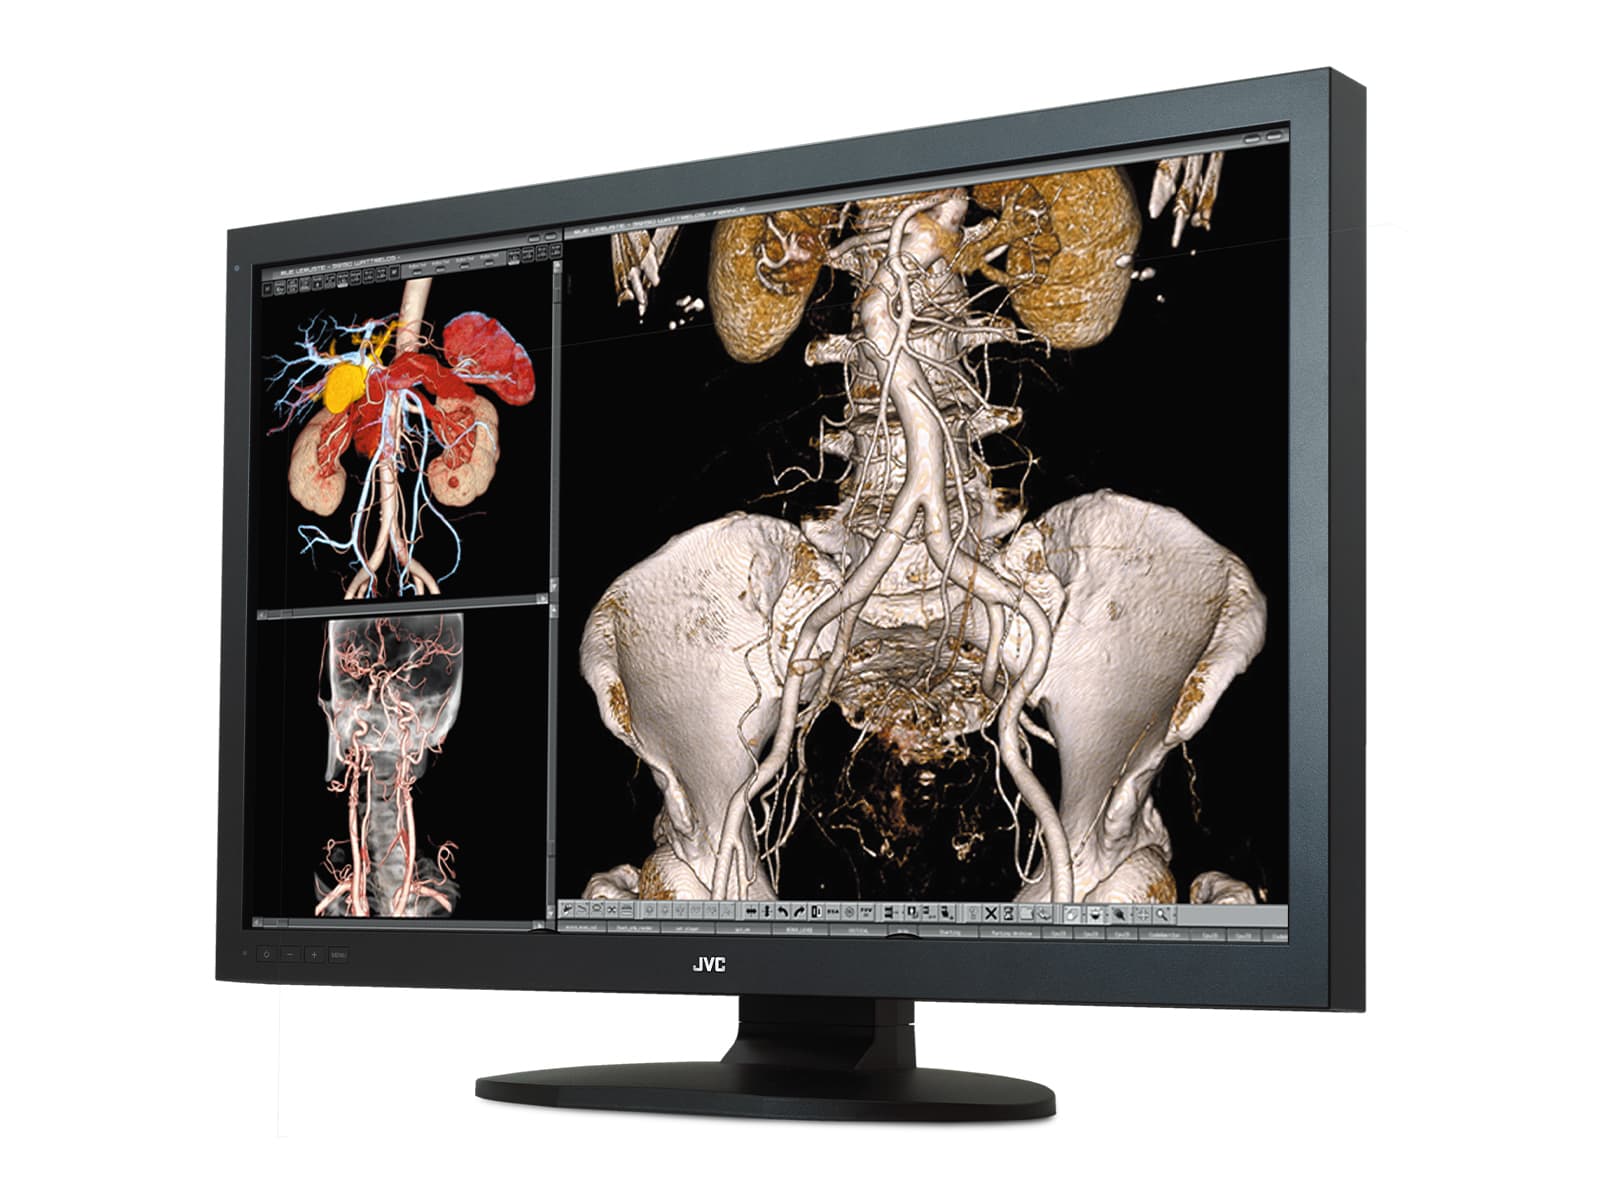 JVC Totoku CCL650i2 6MP LED Color 30" General Radiology Diagnostic Display (CCL650i2) Monitors.com 